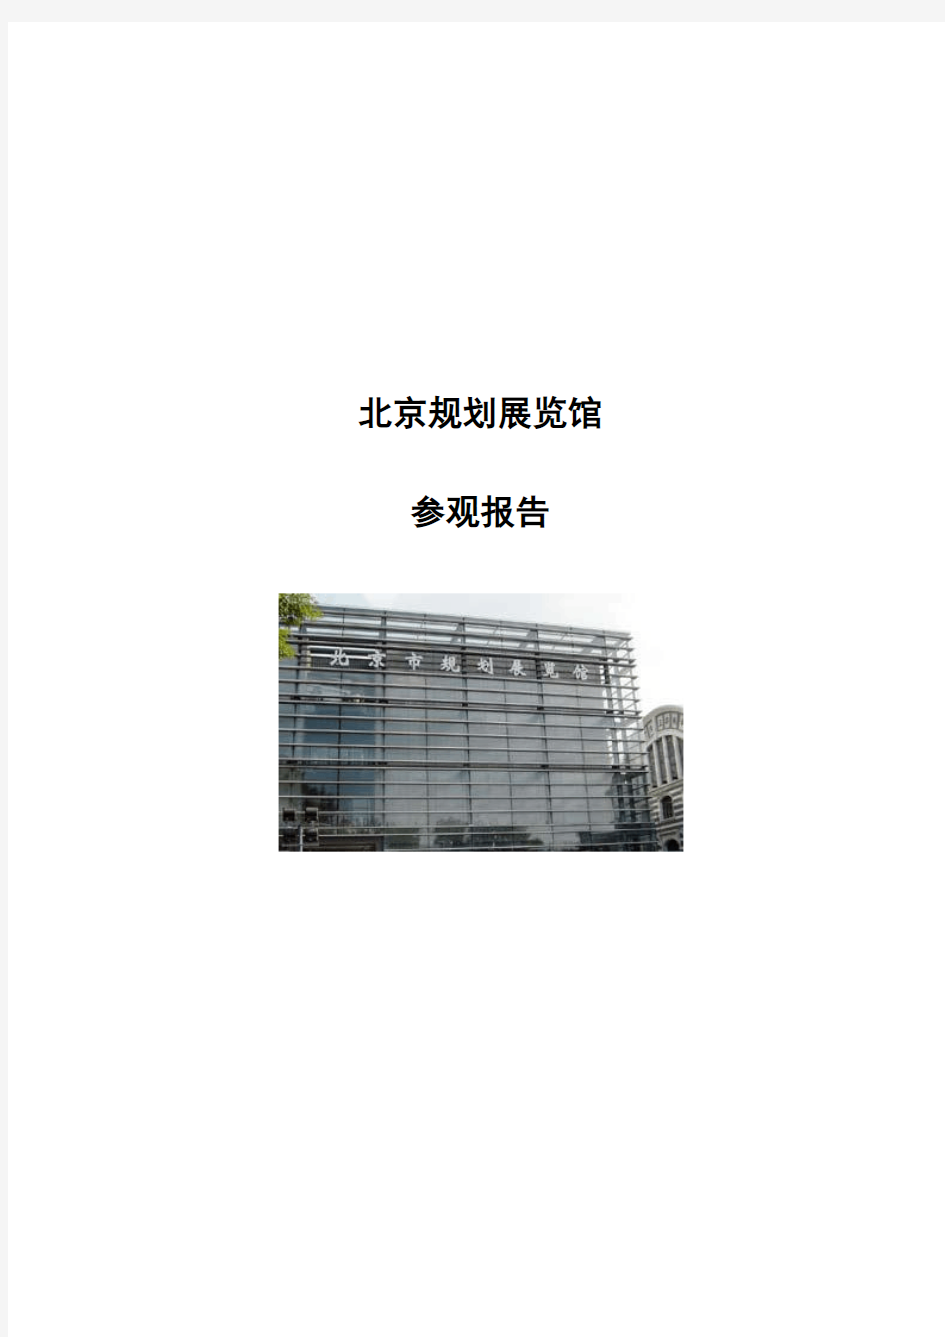 北京城市规划展览馆参观报告